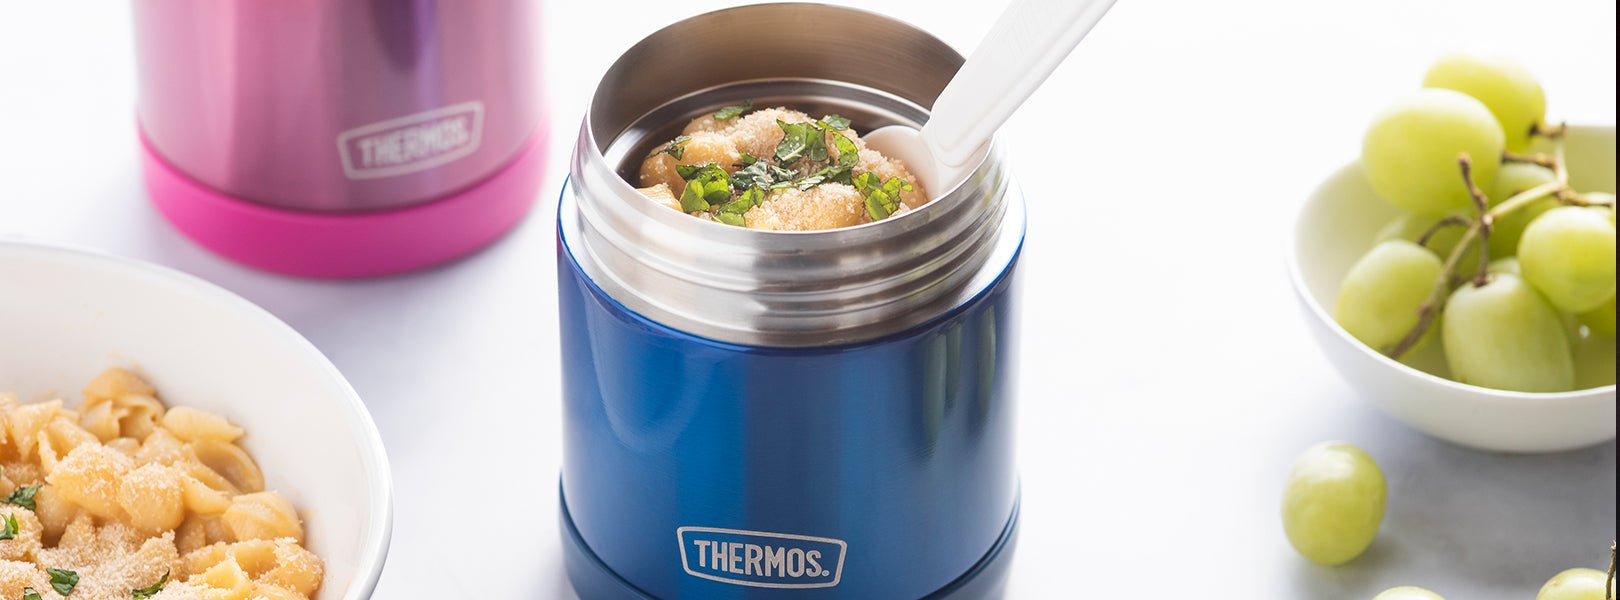 Vanli's Kids Thermos for Hot Food. Leakproof Food Jar. Vacuum